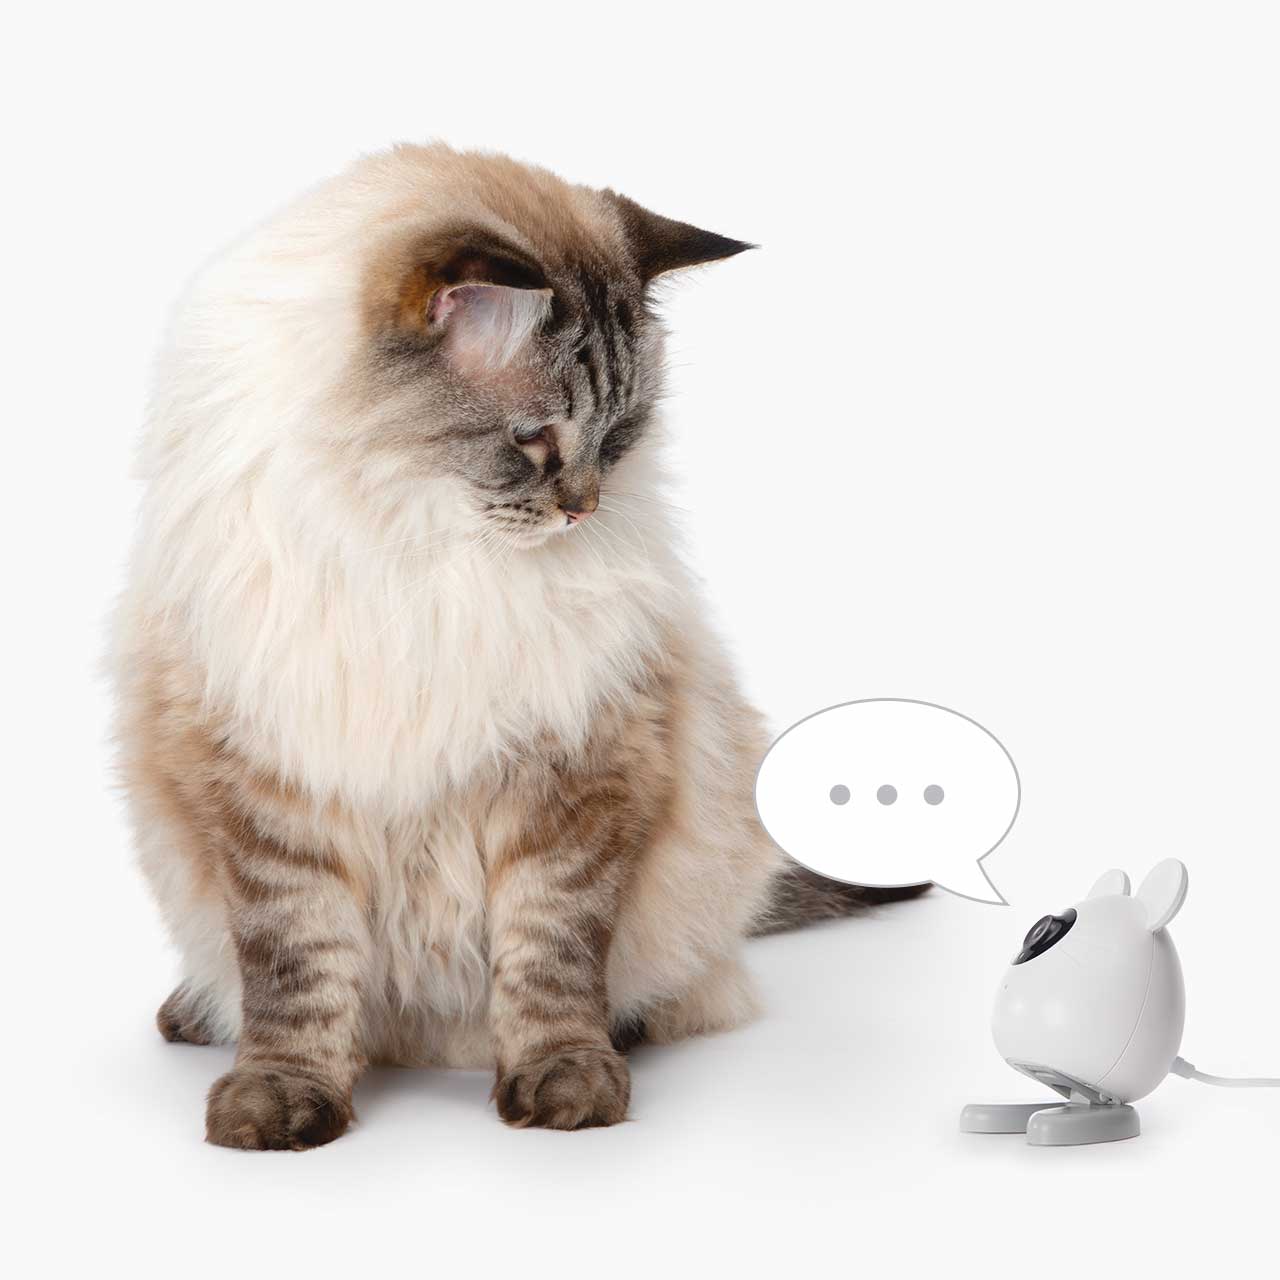 Zwei-Wege-Audio – sprich mit deiner Katze